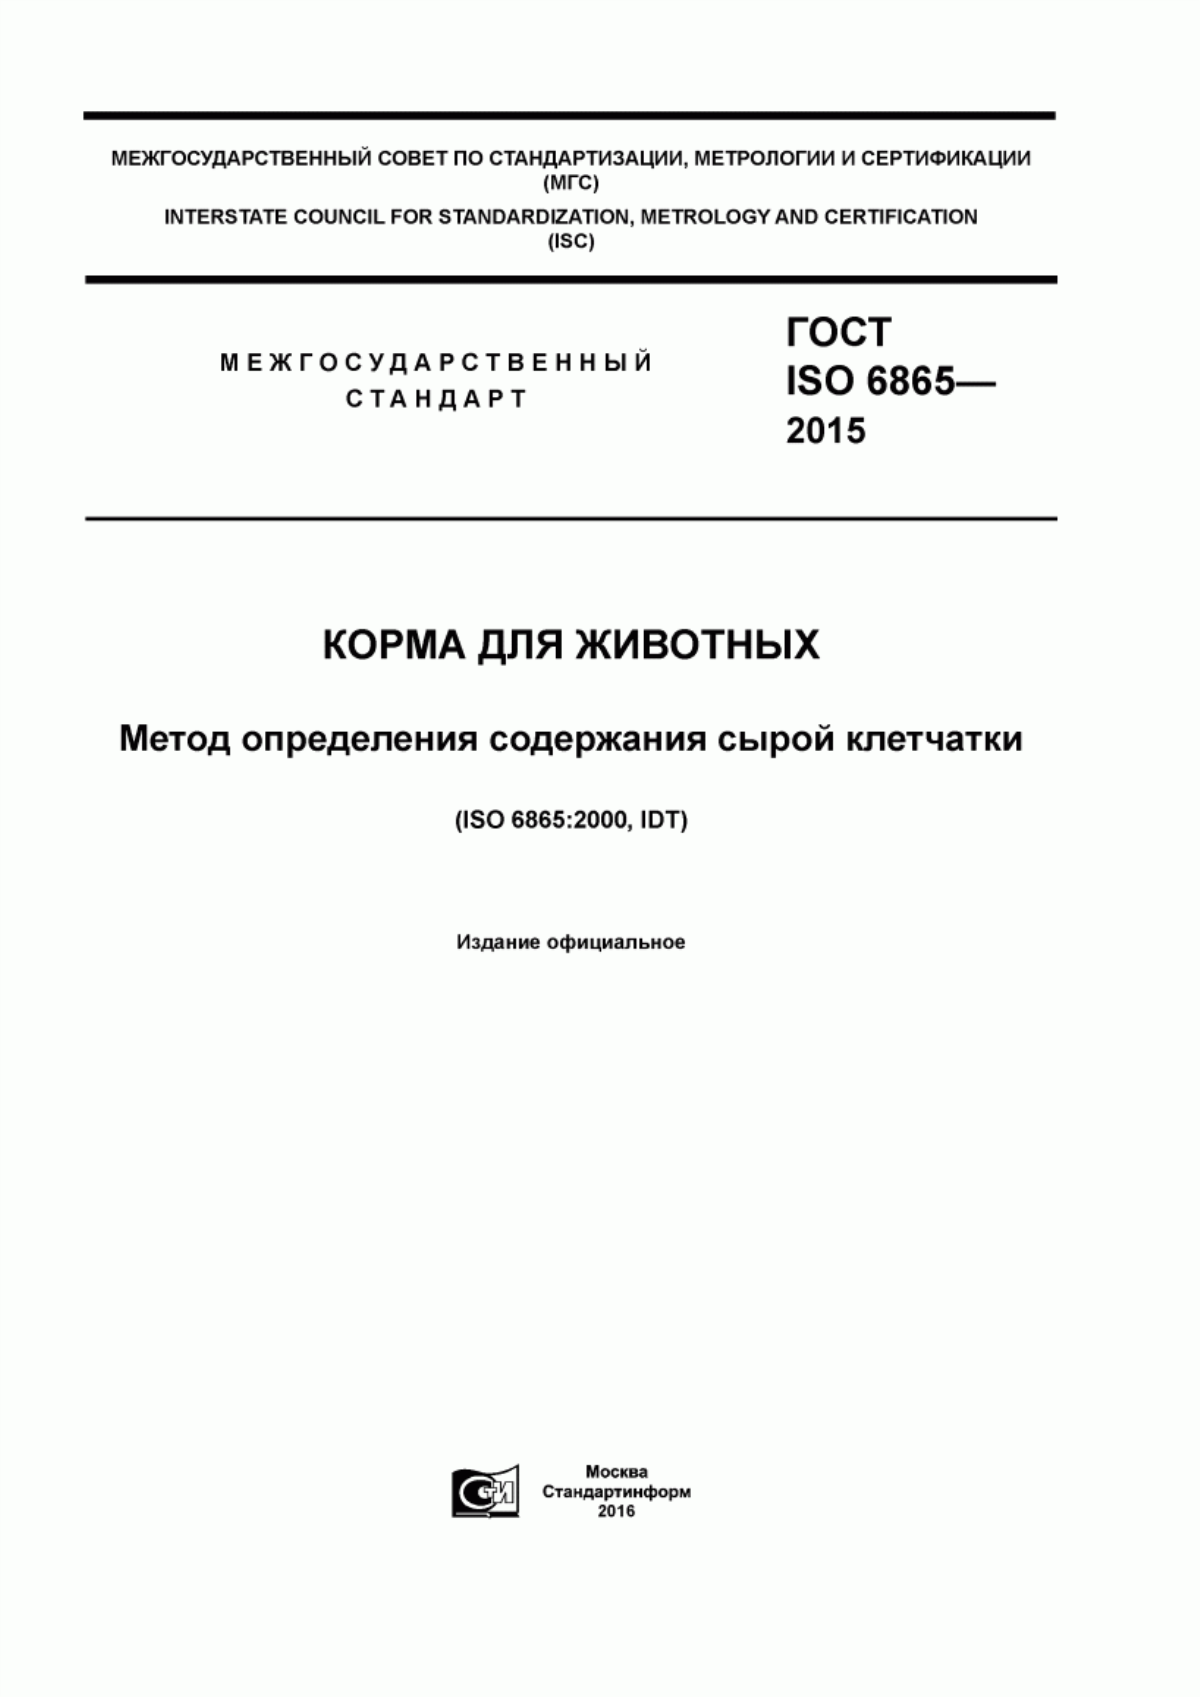 ГОСТ ISO 6865-2015 Корма для животных. Метод определения содержания сырой клетчатки